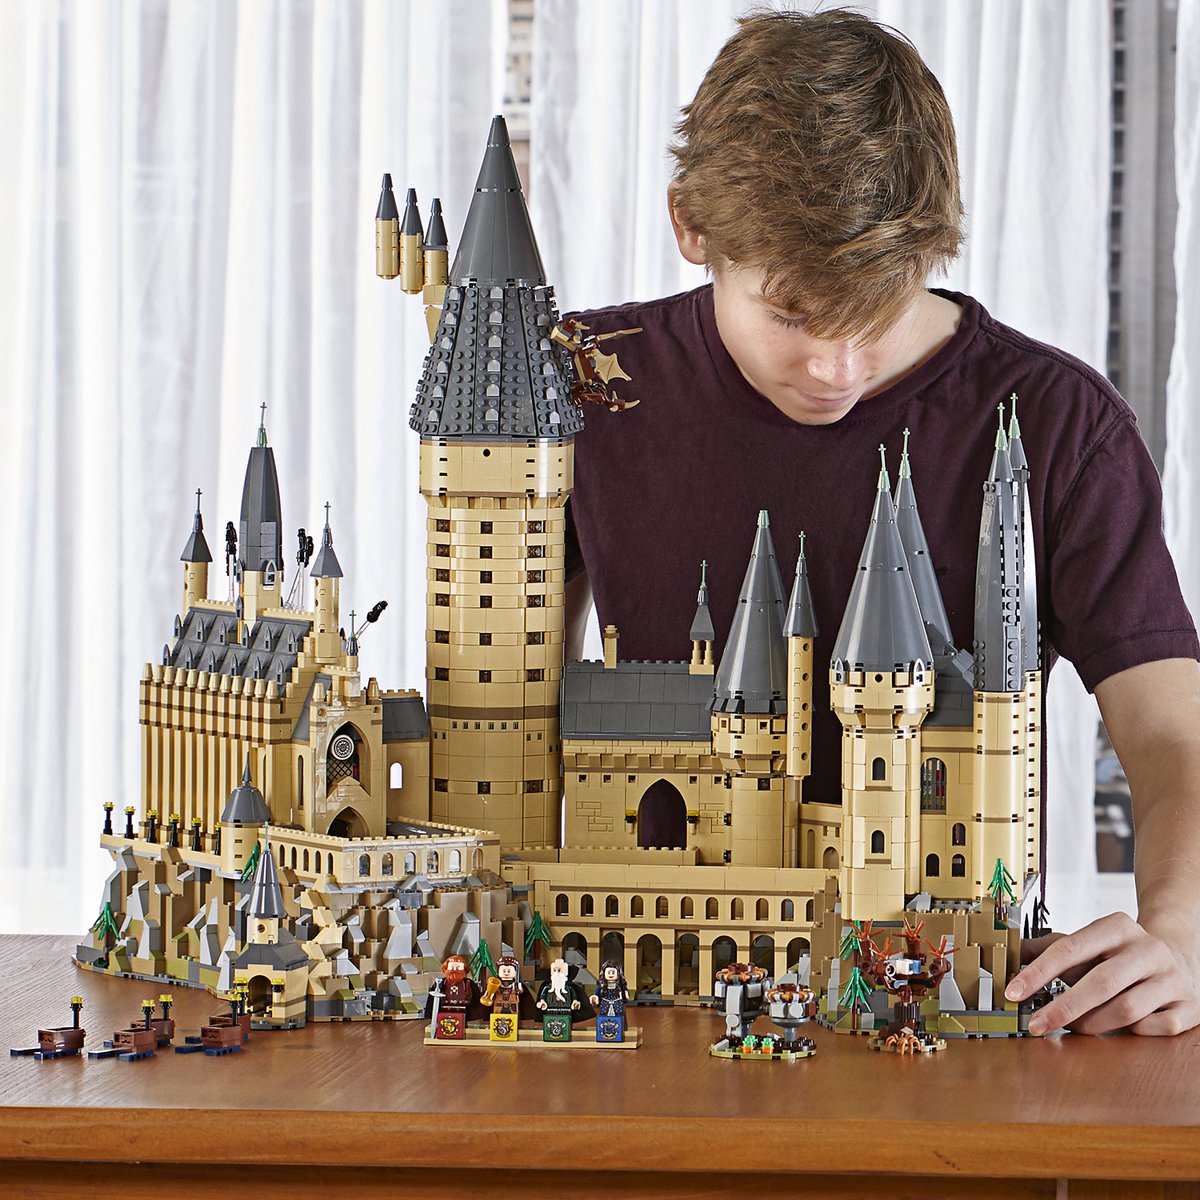 LEGO Harry Potter Le château de Poudlard - 71043 | bol.com